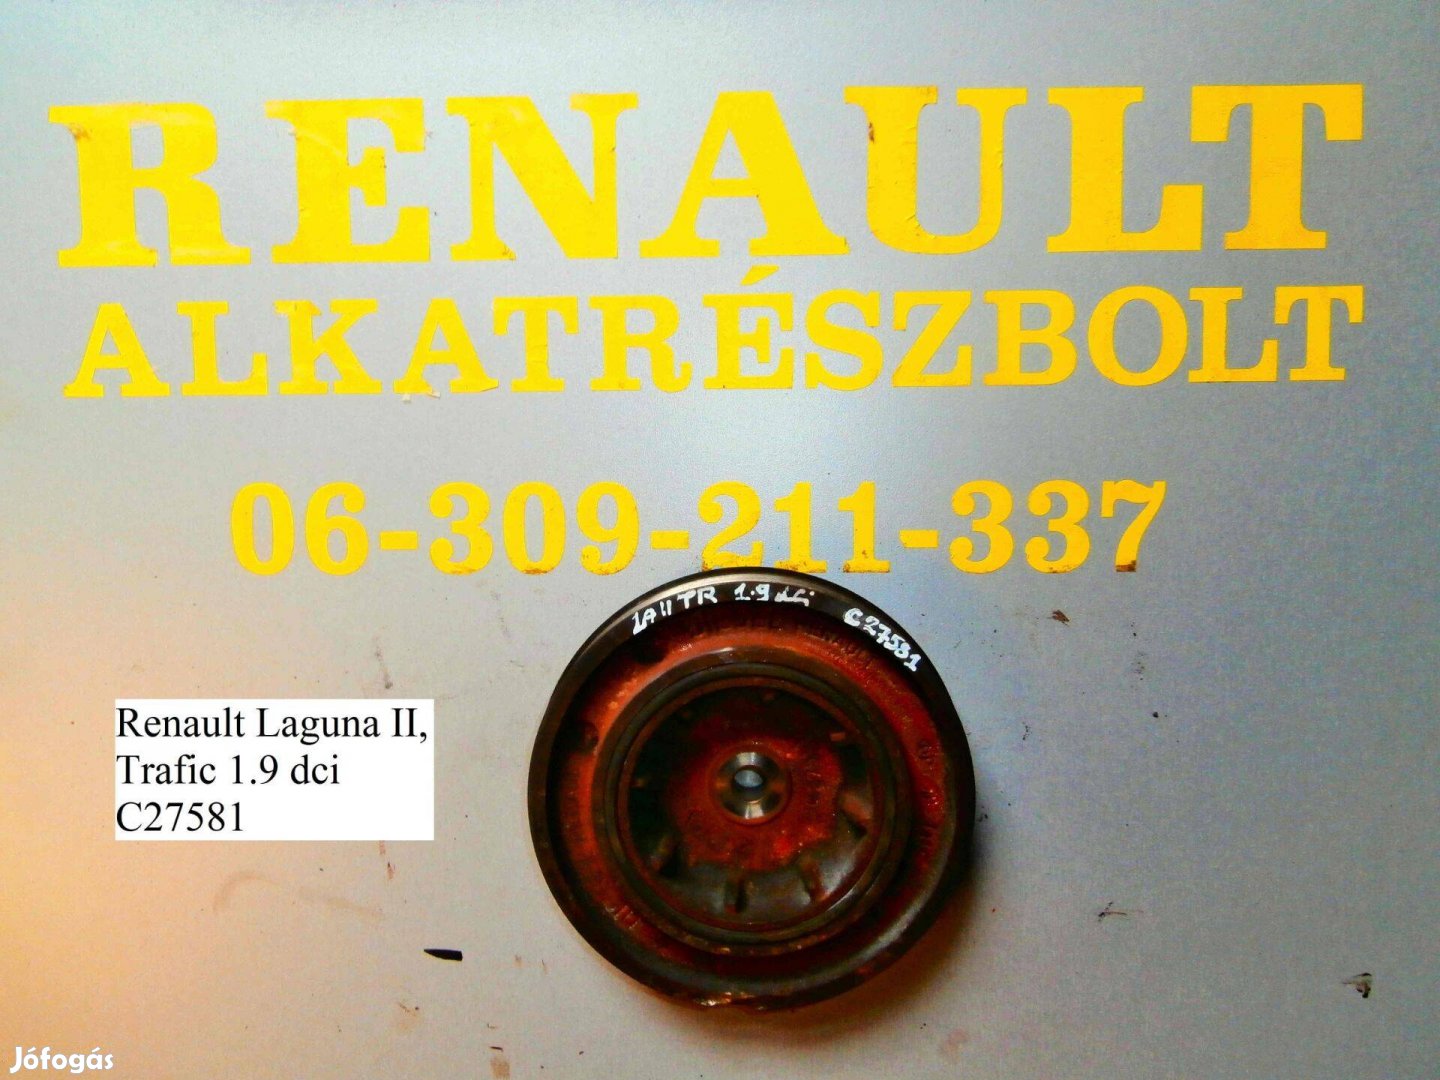 Renault Laguna II, Trafic 1.9 dci C27581 főtengely ékszíjtárcsa